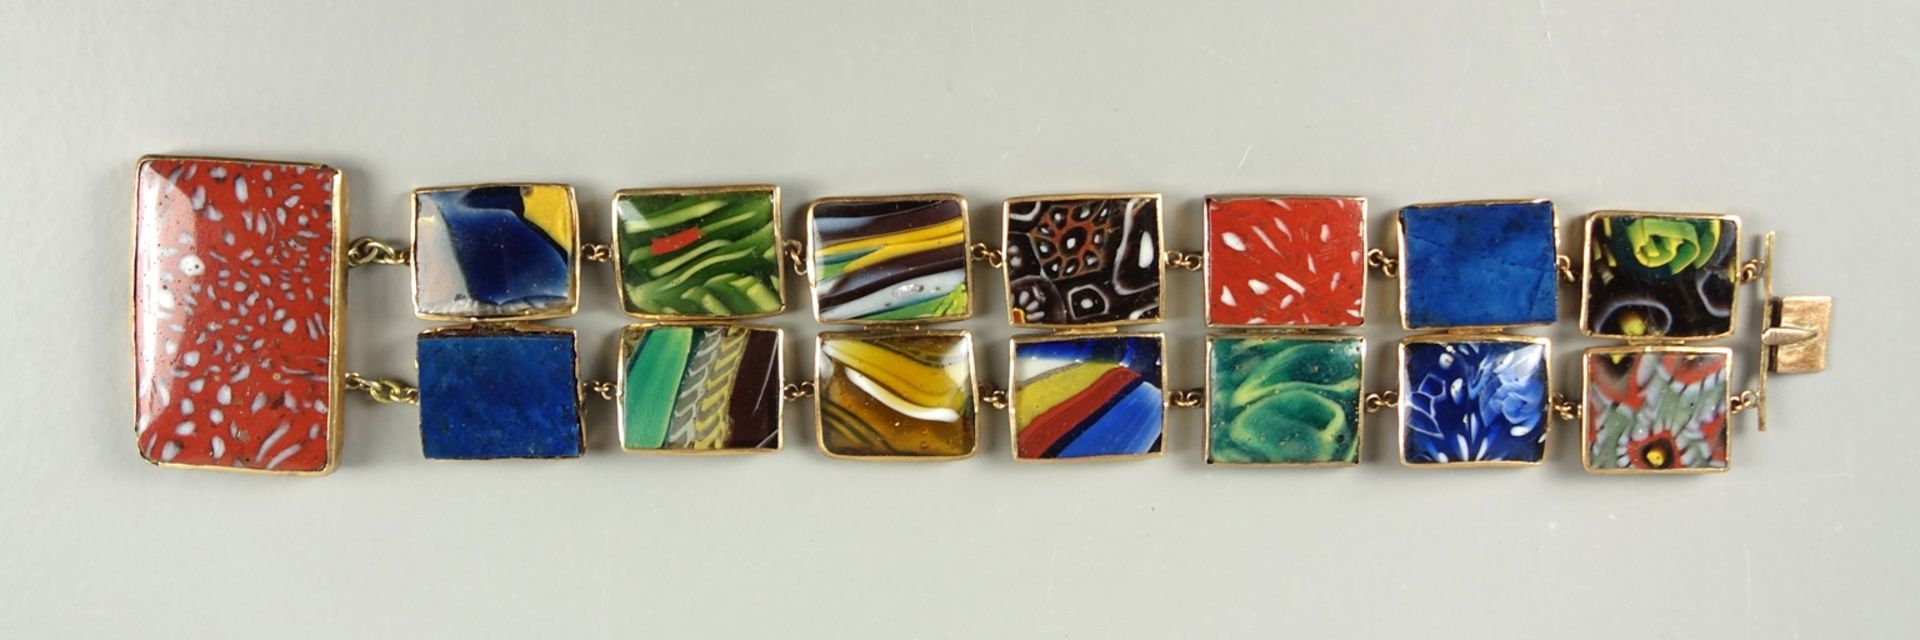 Armband mit Glasschmelzelementen, Murano, Goldfassung, 19.Jh., unterschiedliche - Bild 5 aus 7